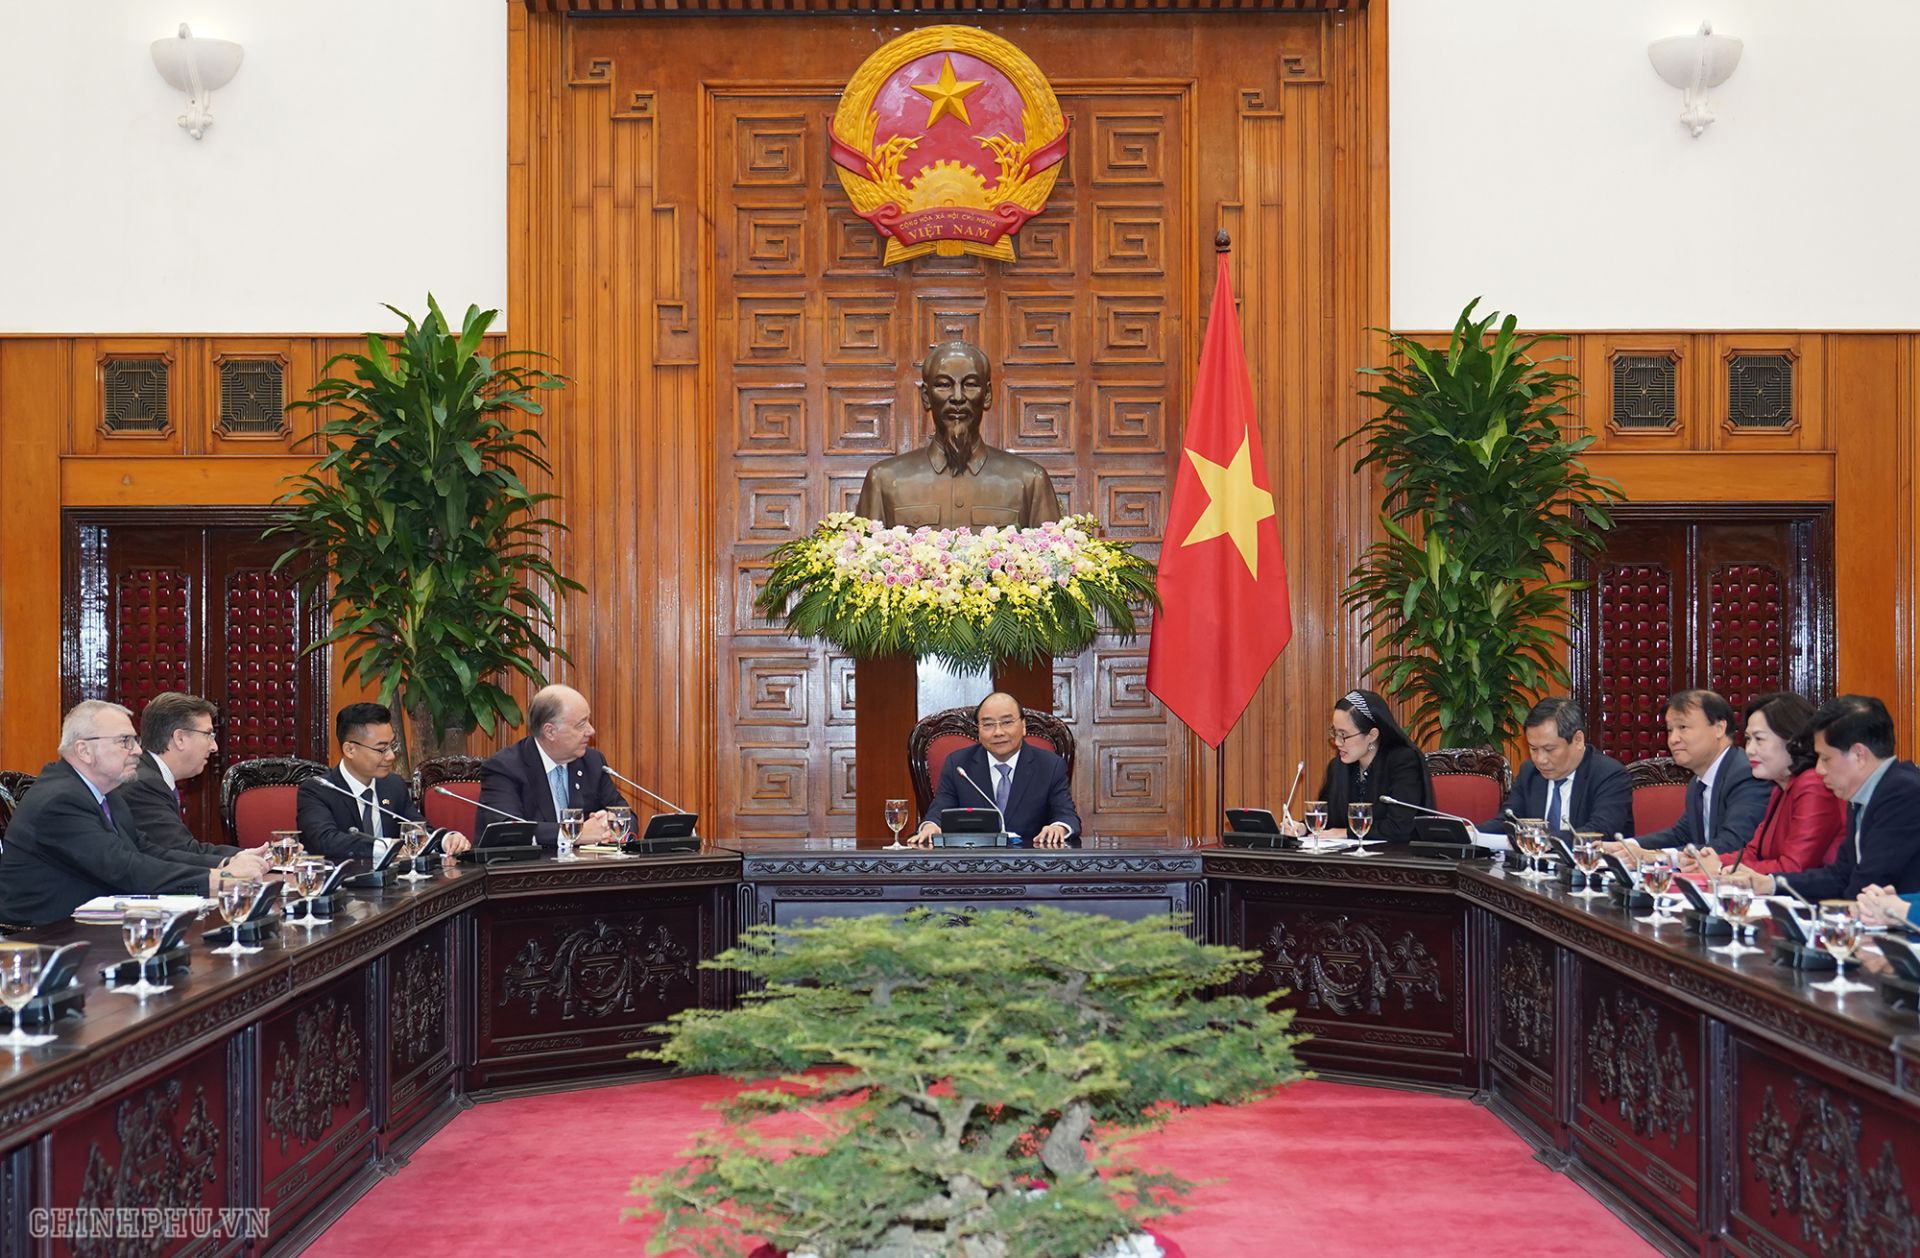 Cộng đồng doanh nghiệp Mỹ đóng vai trò rất quan trọng trong quan hệ Việt - Mỹ